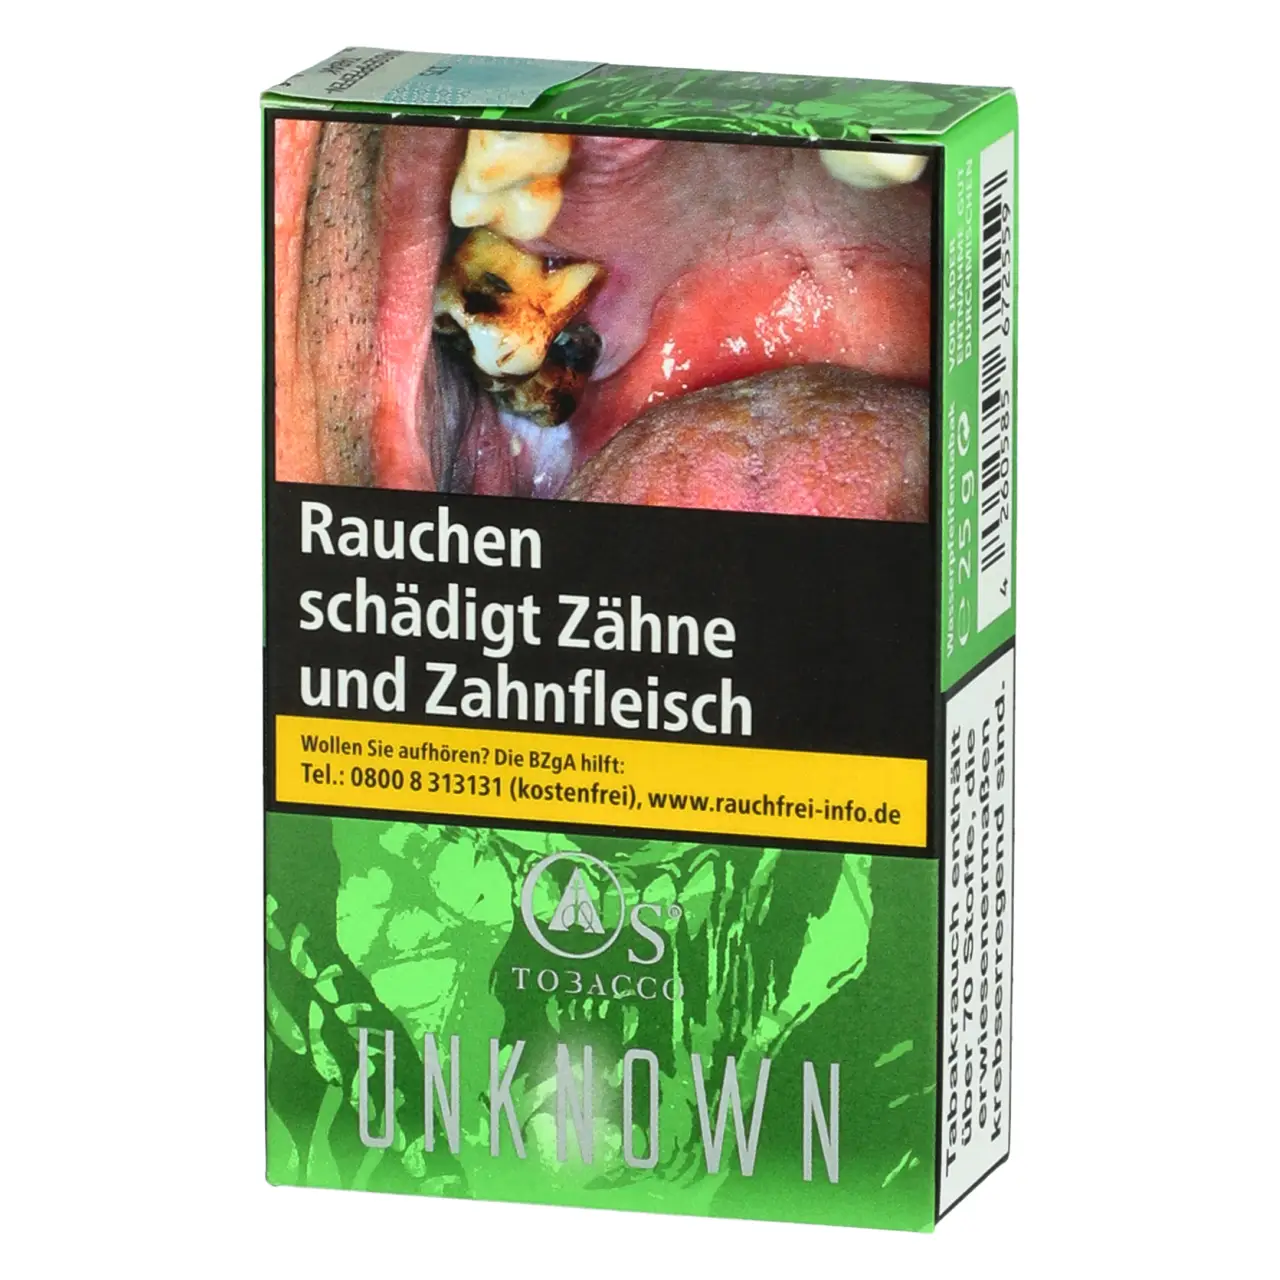 O´s Tobacco Shisha Tabak Unknown - Kaktusfeige Limette Früchtemix - 25g